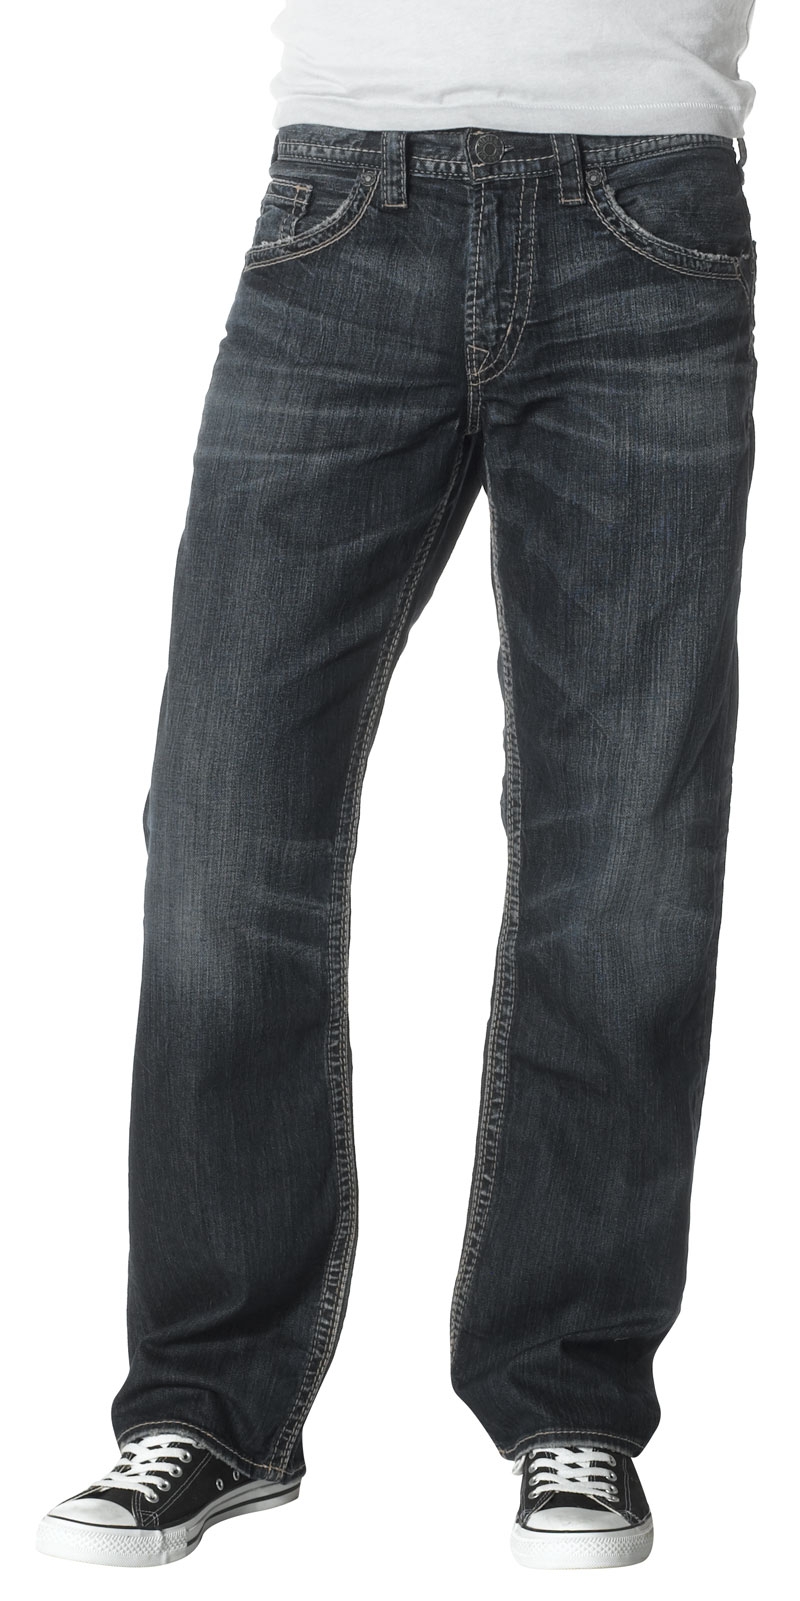 https://www.fortbrands.com/30824/silver-jeans-mens-gordie-loose-fit-jeans.jpg